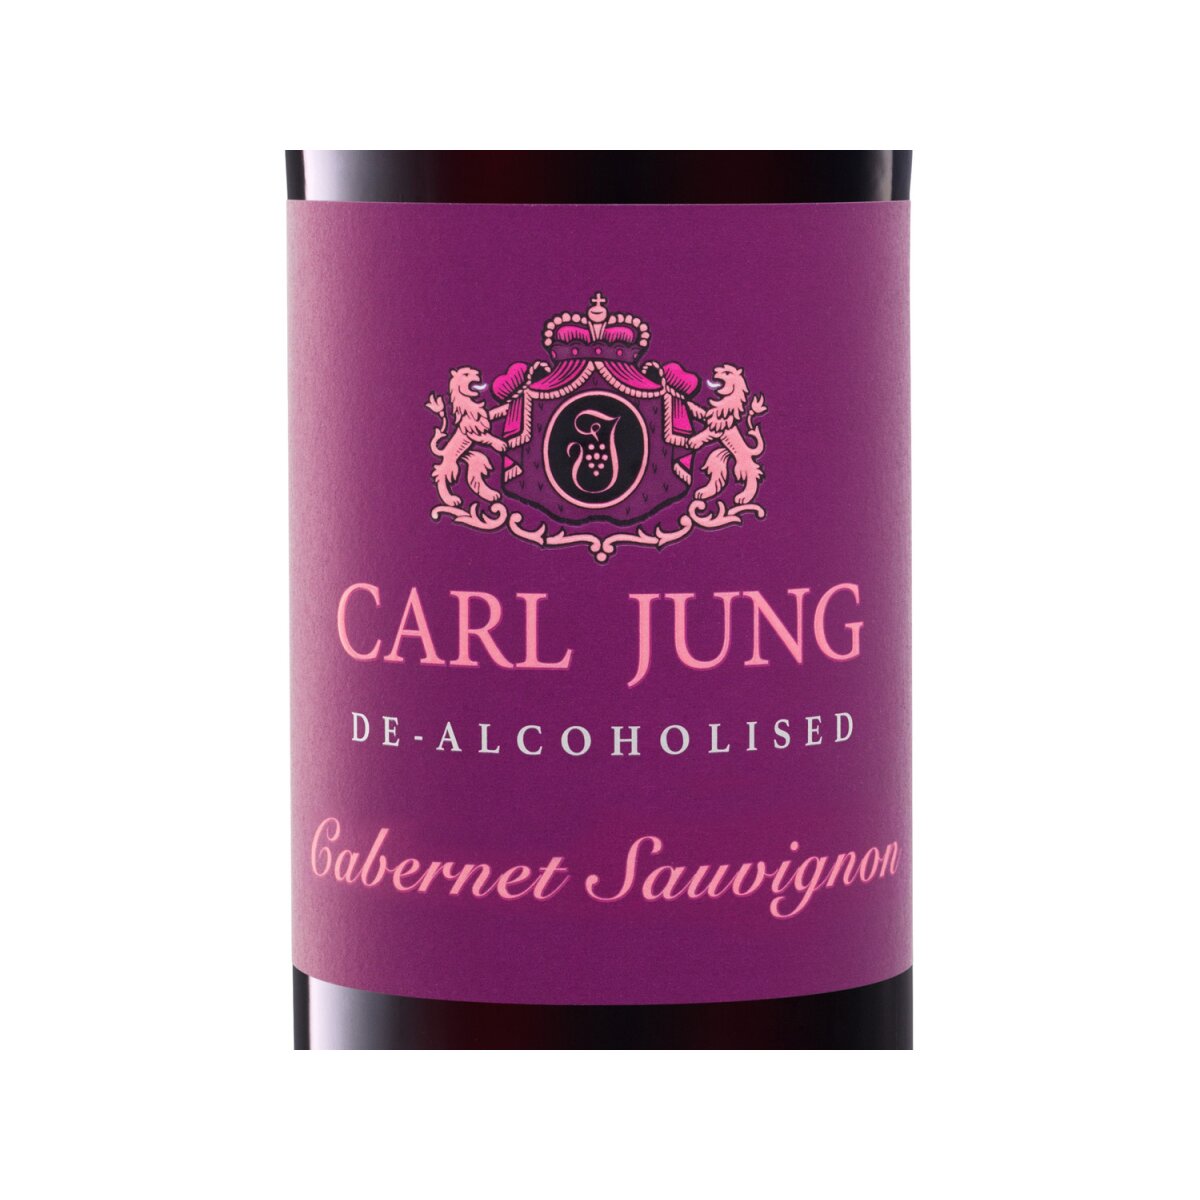 Carl Jung vegan, € 4,99 Rotwein, Cabernet Sauvignon alkoholfreier